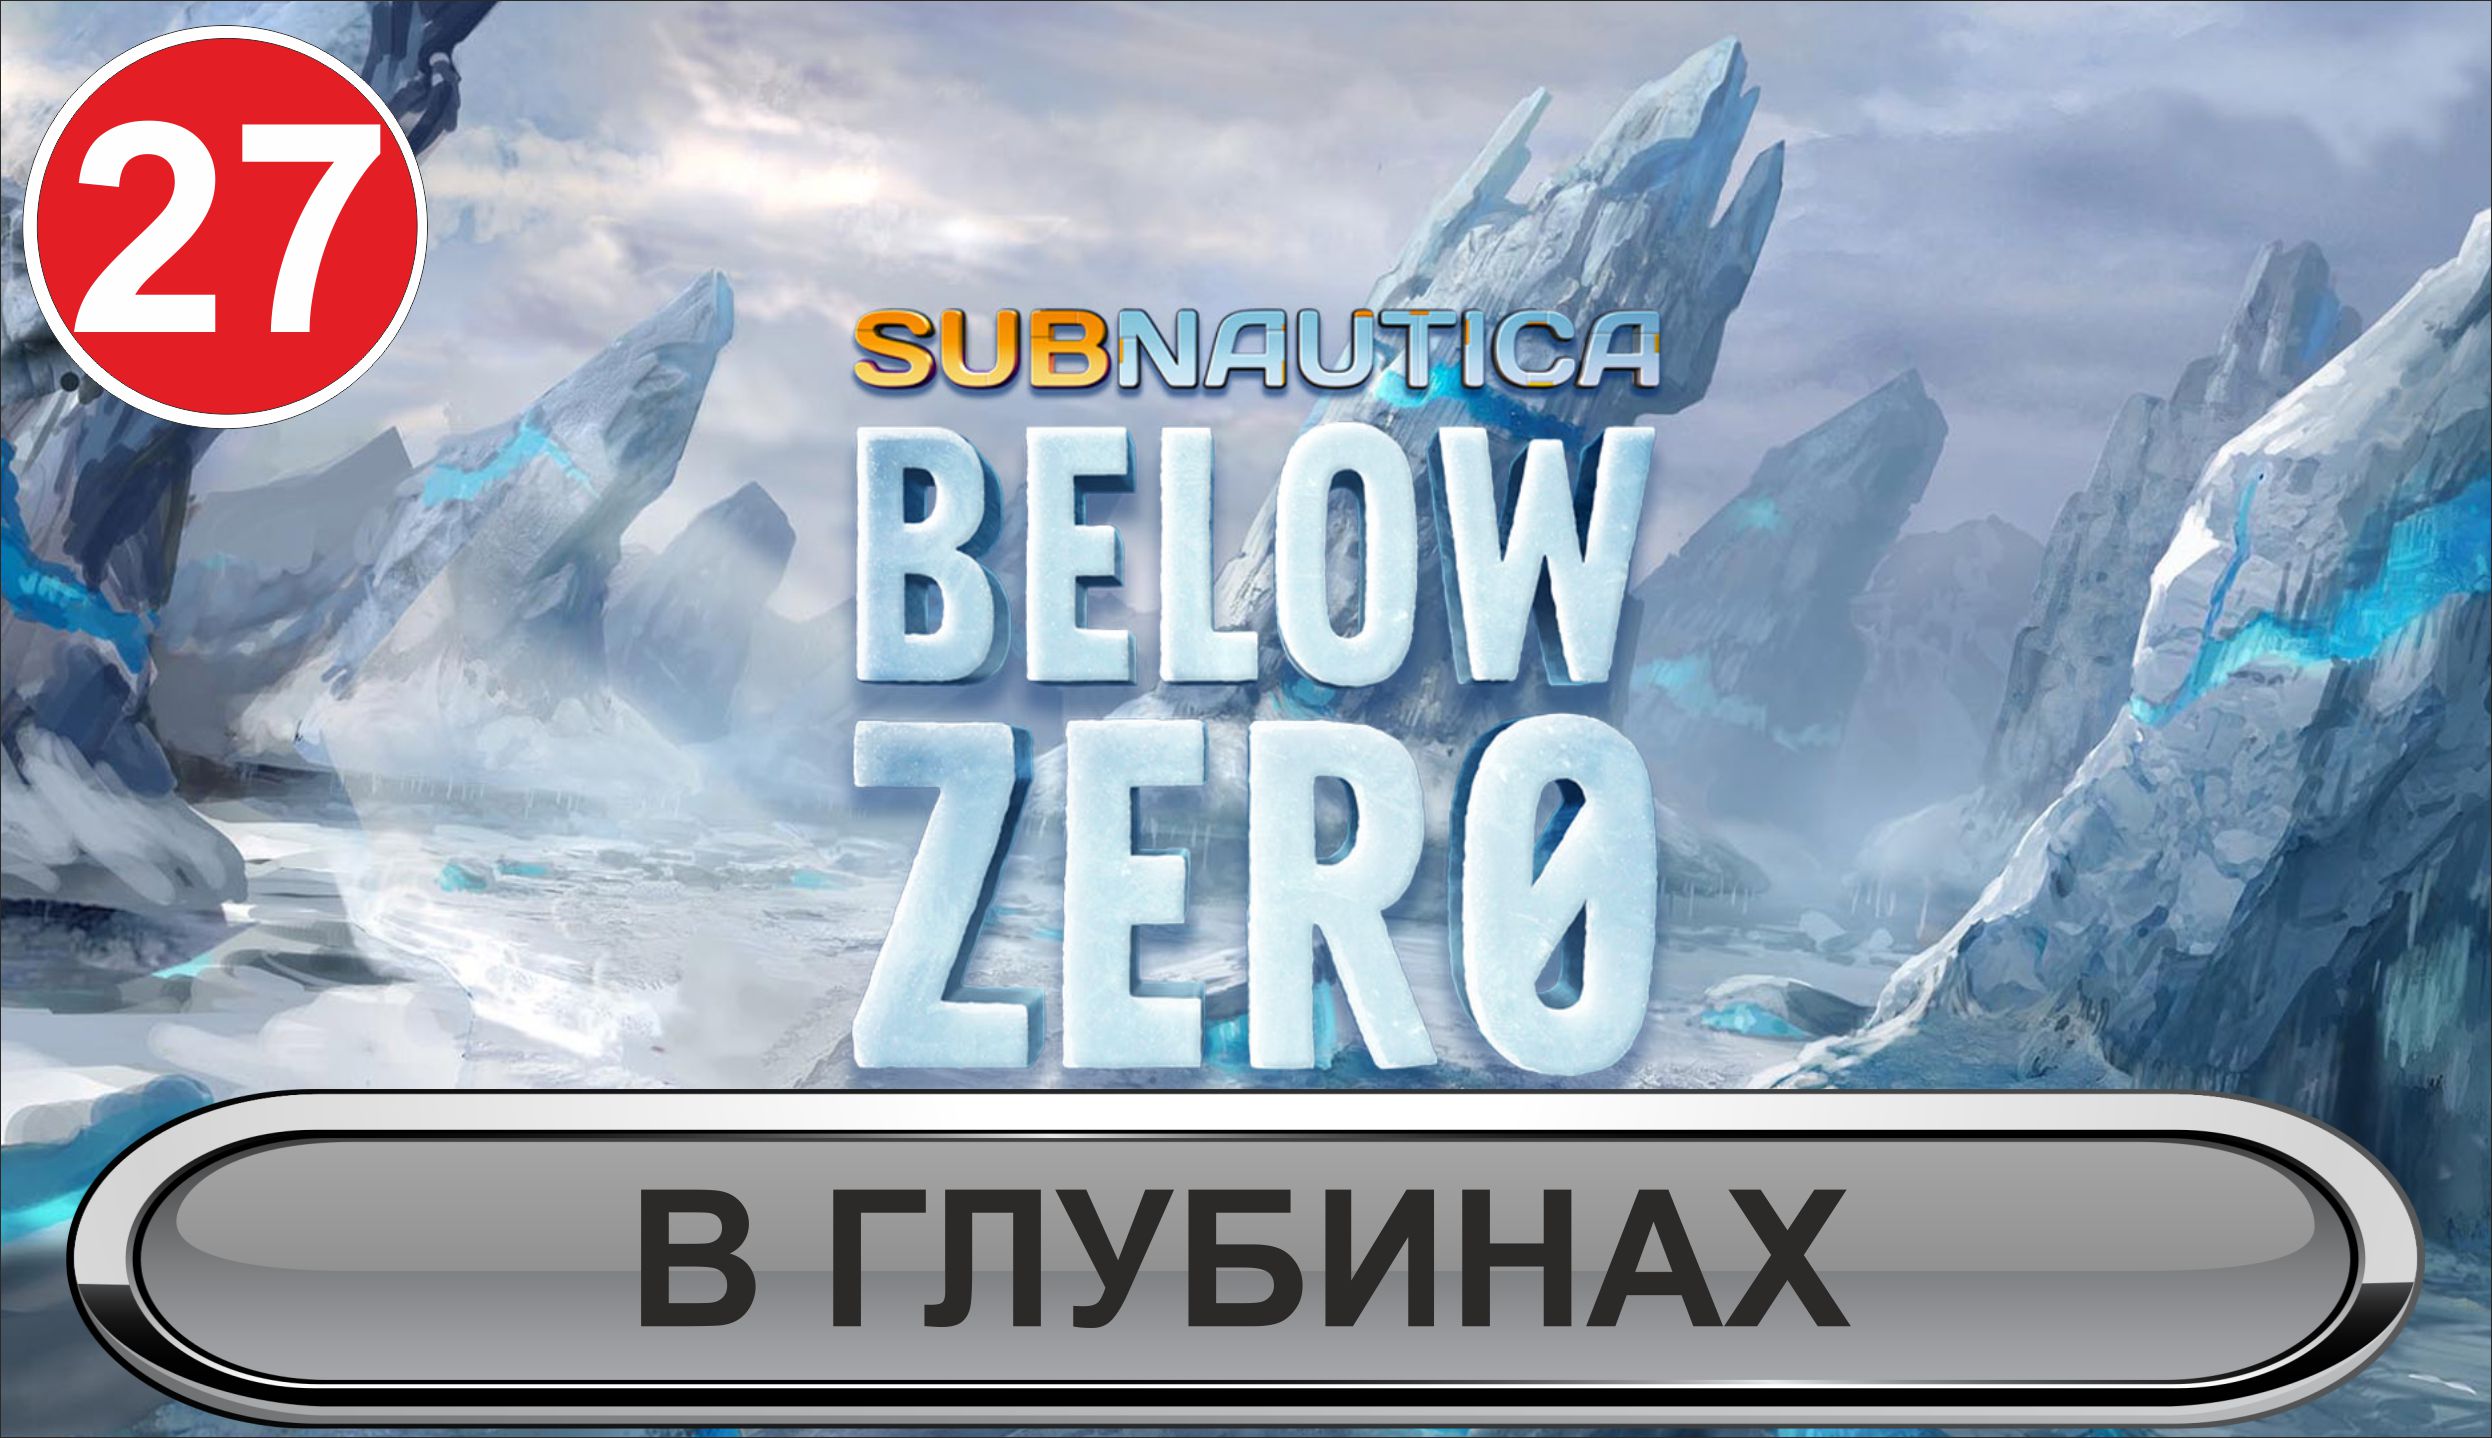 Subnautica: Below Zero - В глубинах